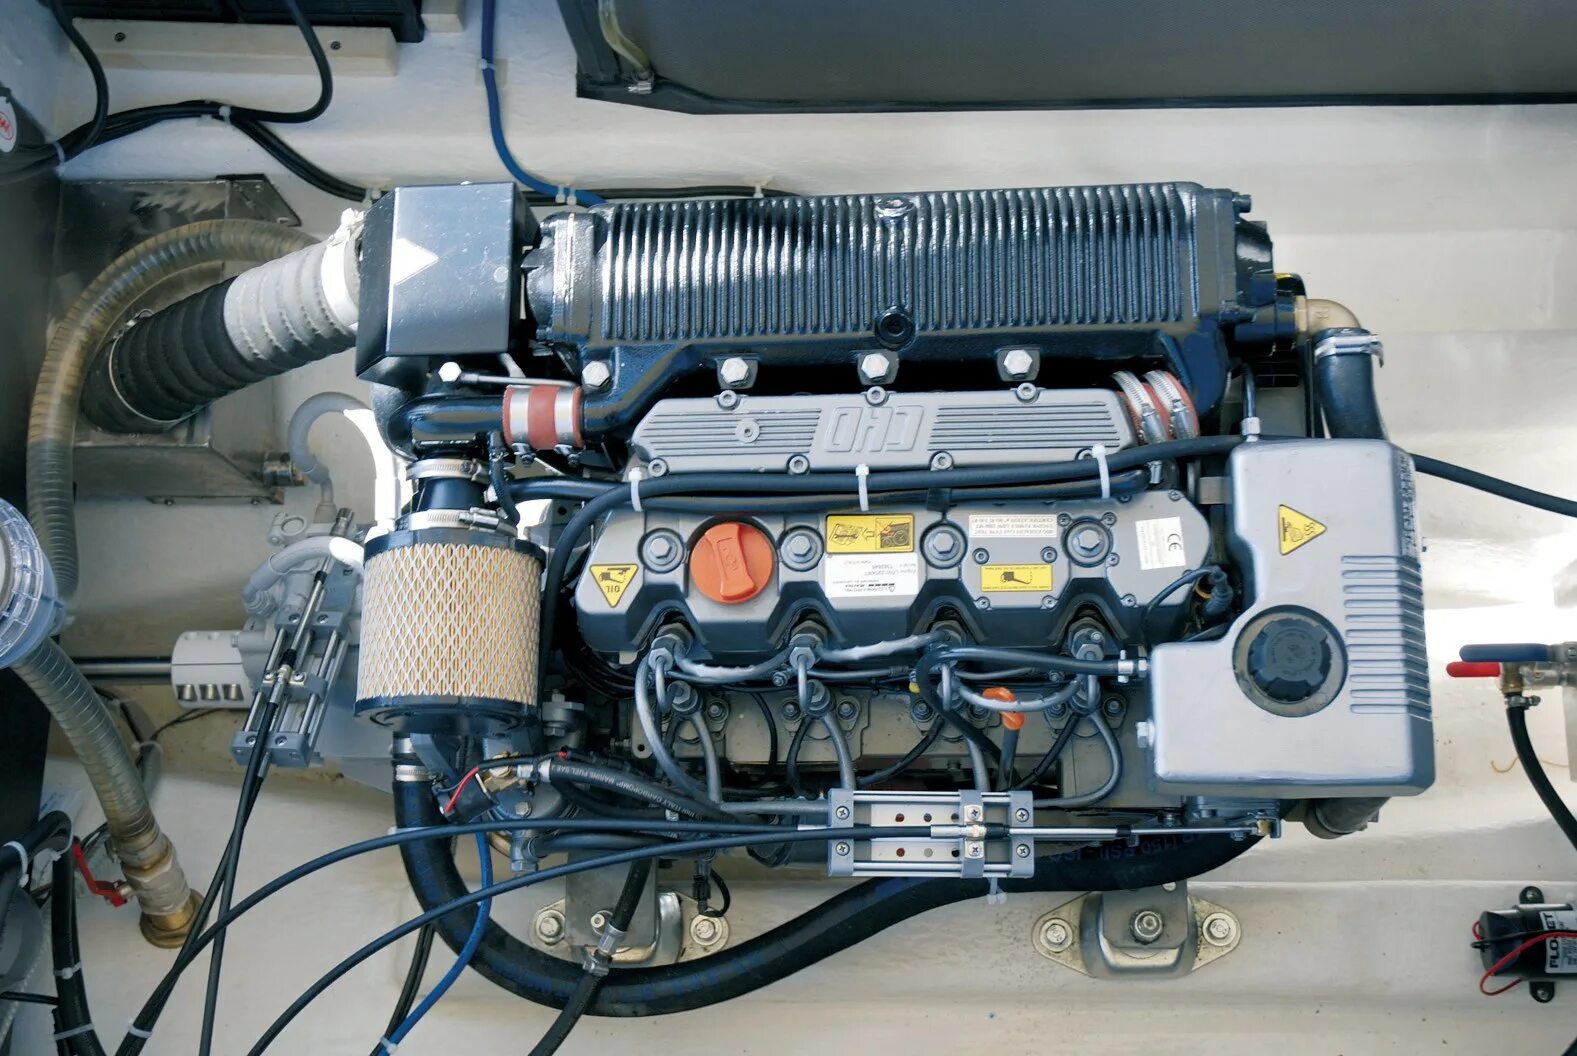 Двигатель Lombardini LDW 2204. Ламборджини LDW 2204. Lombardini LDW 2204 (Tier 3a). Маховик ldw2204/t. Двигатель ламборджини мтз